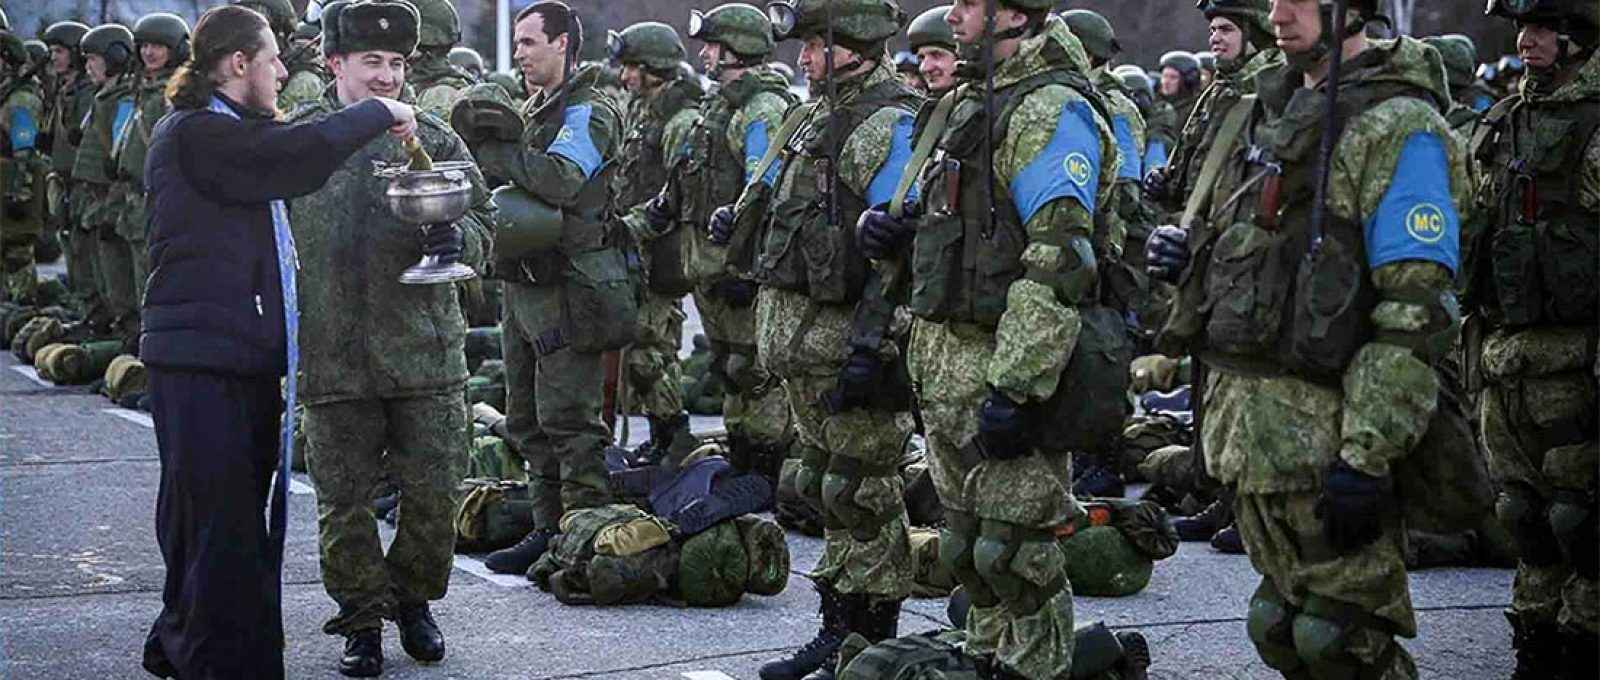 Forças de paz da Rússia preparando-se para ir a Karabakh (Foto: North Press Agency).